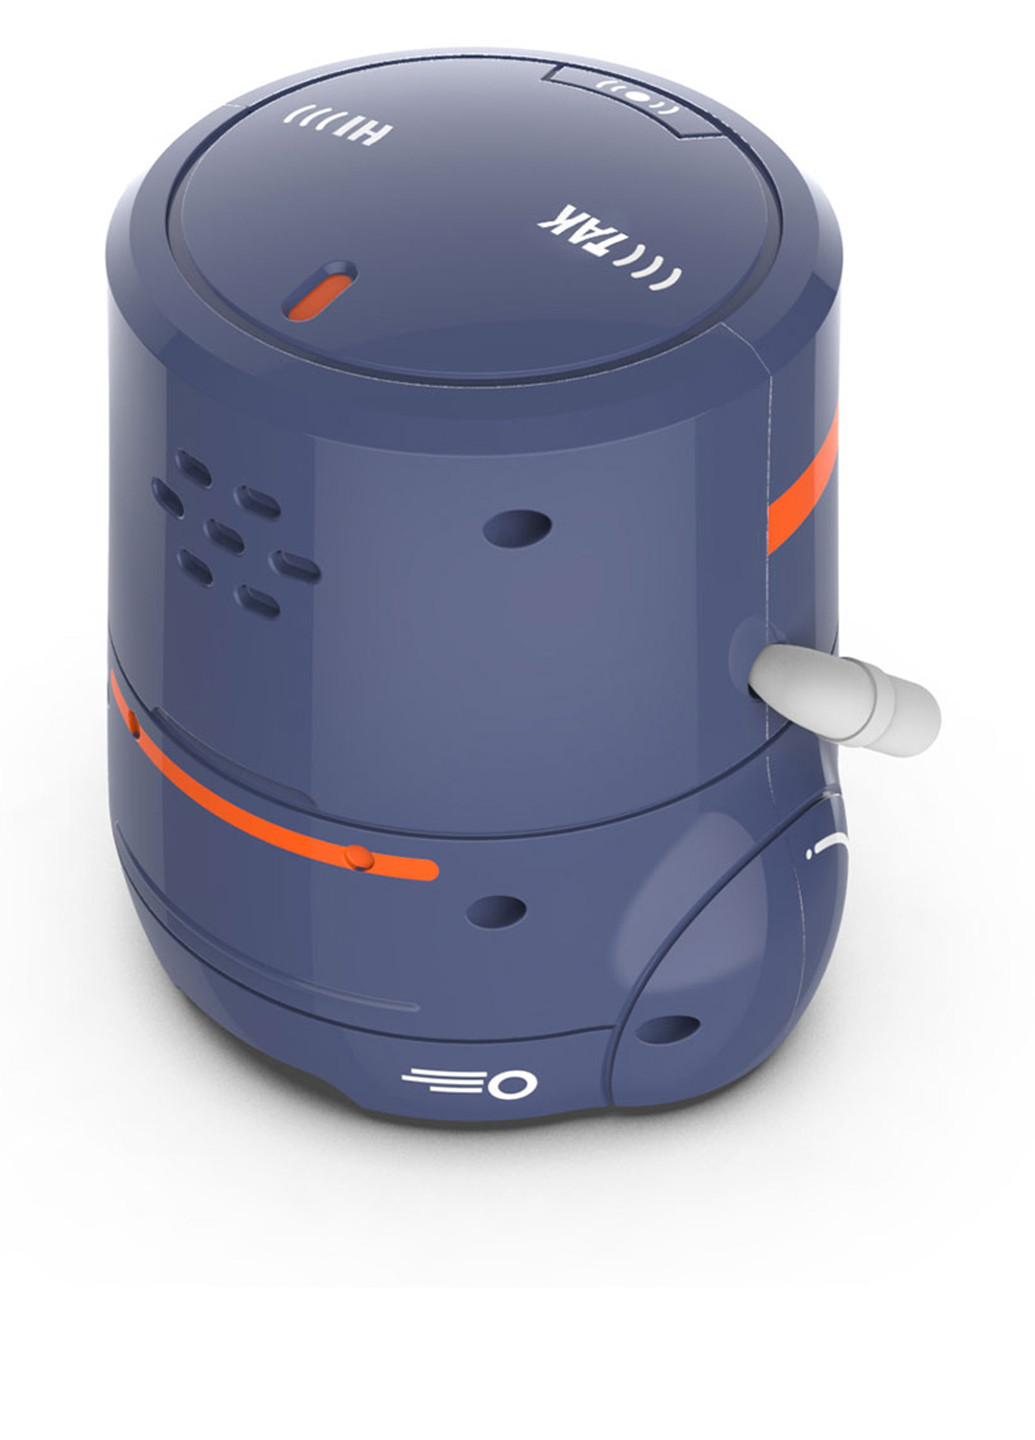 Умный робот с сенсорным управлением и обучающими карточками - 2 (темно-фиолетовый, озвуч.укр) AT-Robot (247385240)